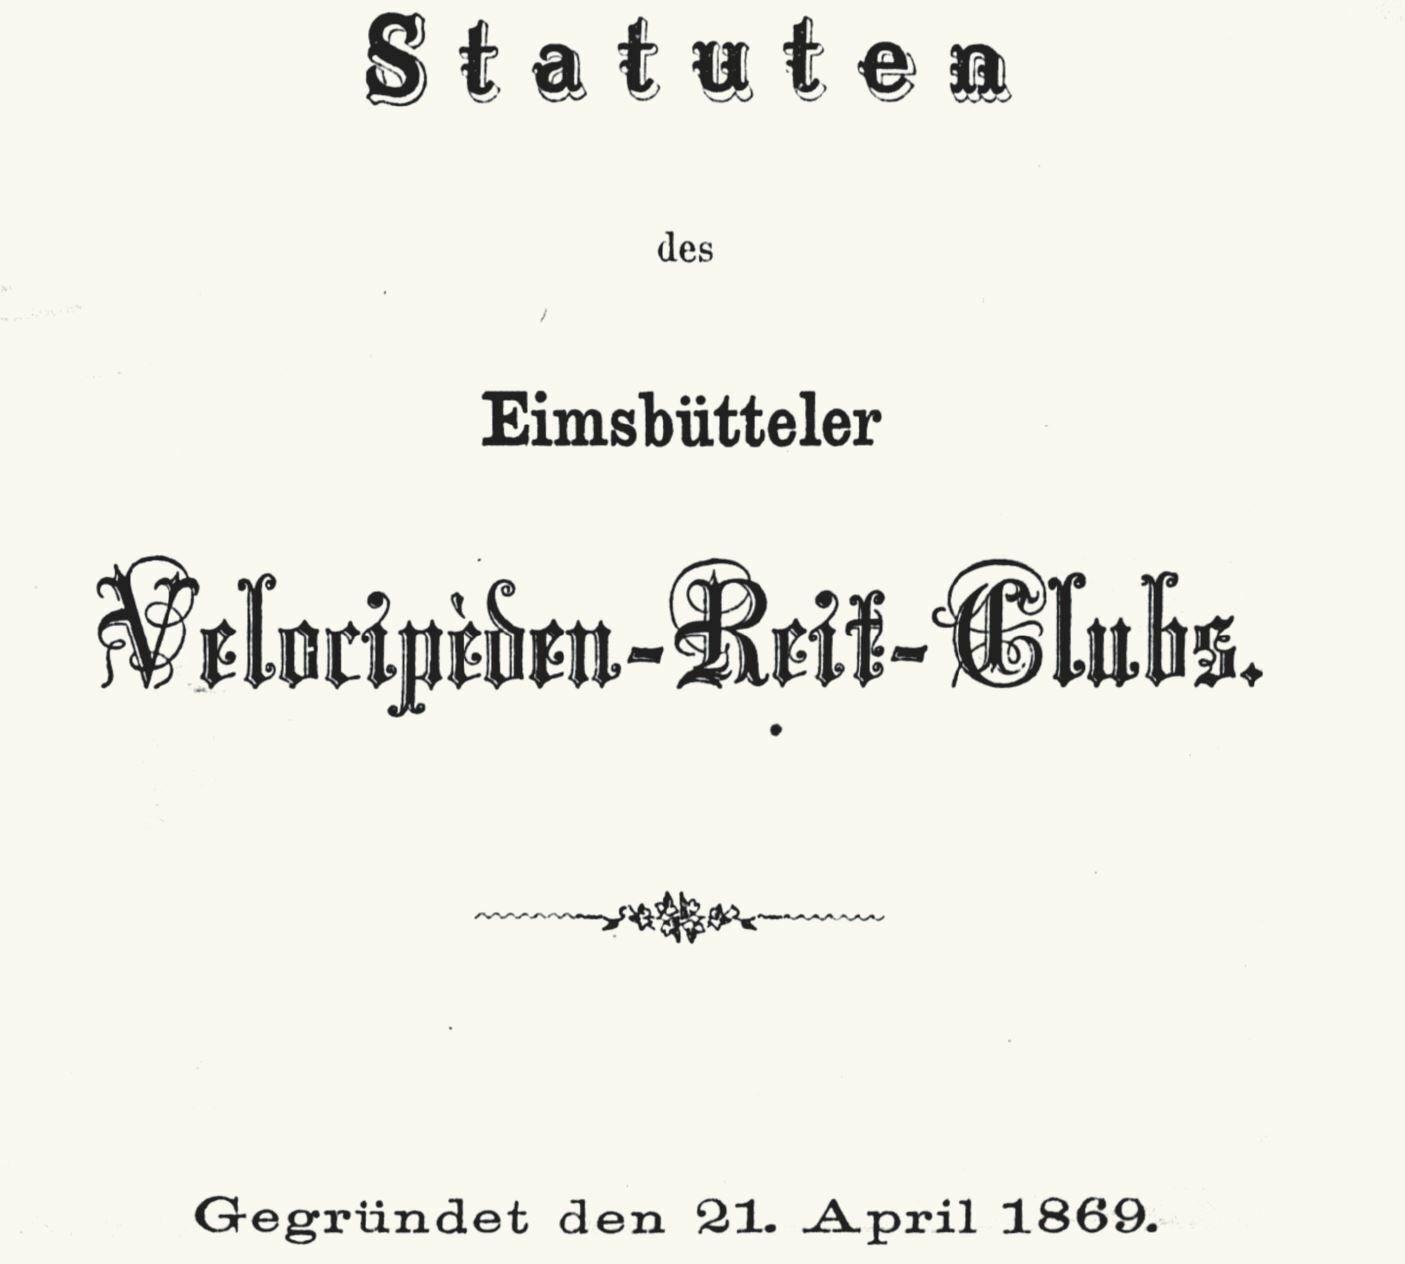 Unter der Dachzeile Statuten steht in großen geschwungenen Lettern „Eimsbütteler Velocipèden-Reit-Club“, darunter das Gründungsdatum 21. April 1869.